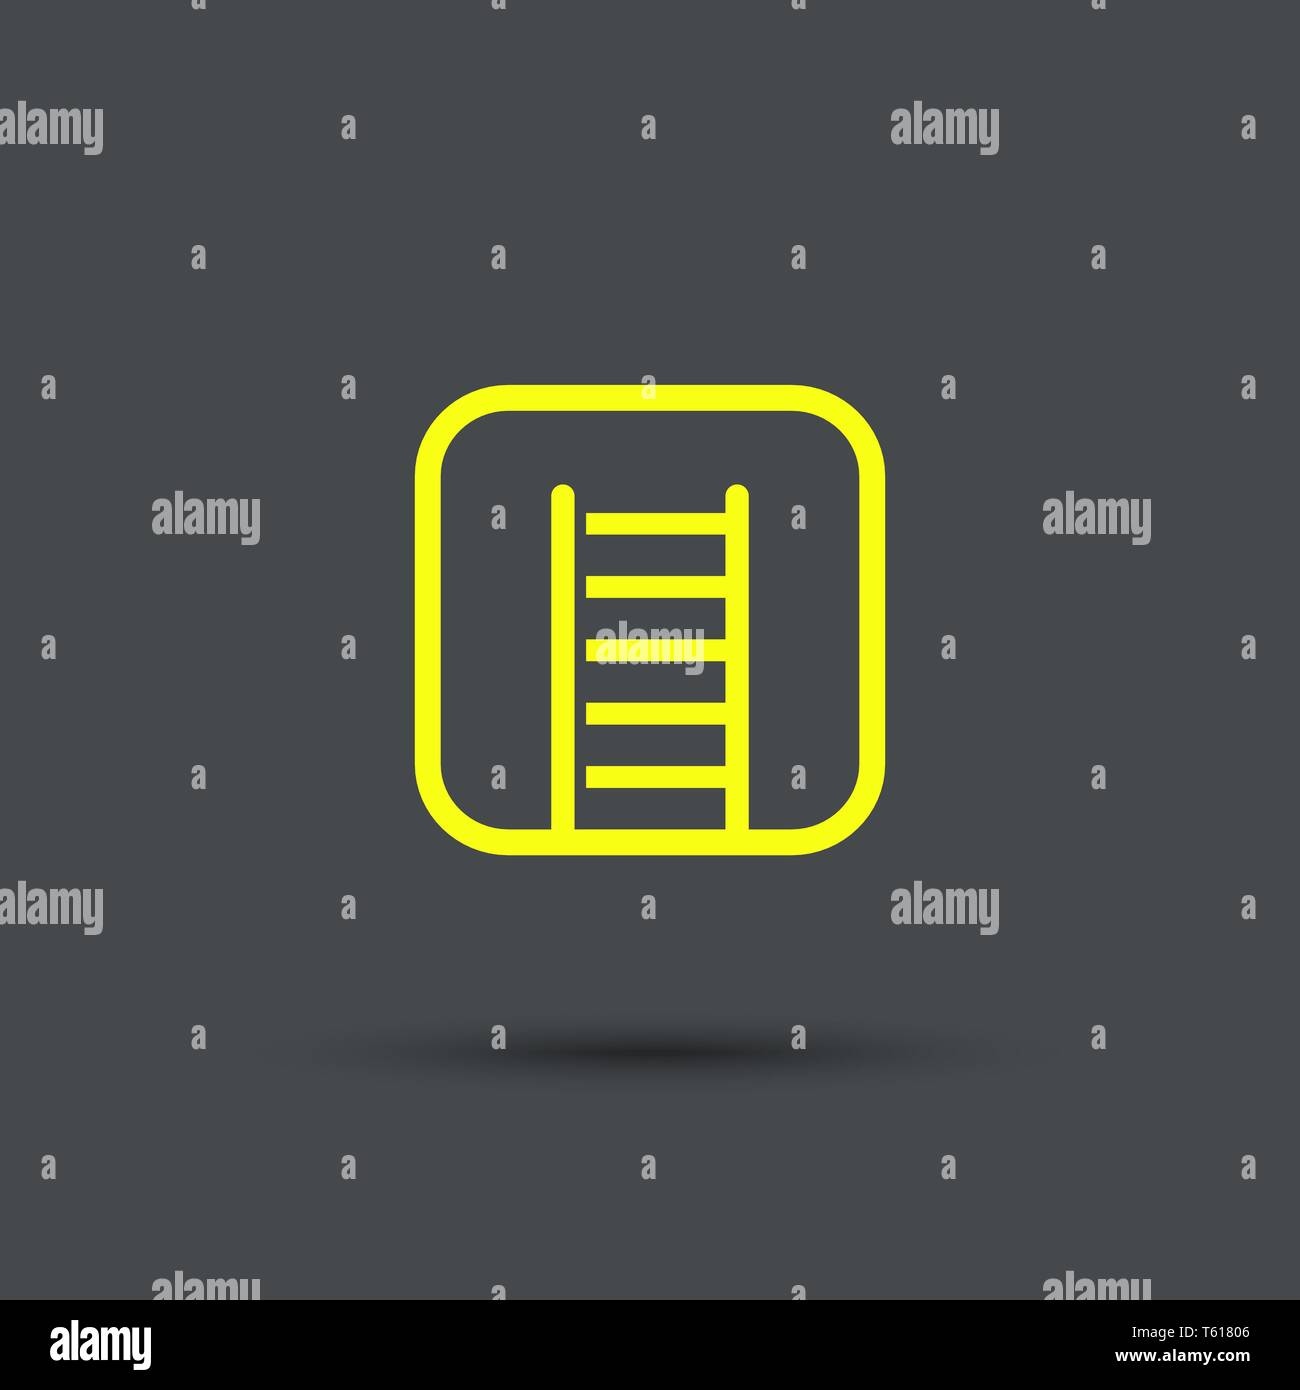 Fire icona della scaletta, isolata, cartello giallo su sfondo grigio. Simboli esclusivi. Illustrazione Vettoriale. Illustrazione Vettoriale